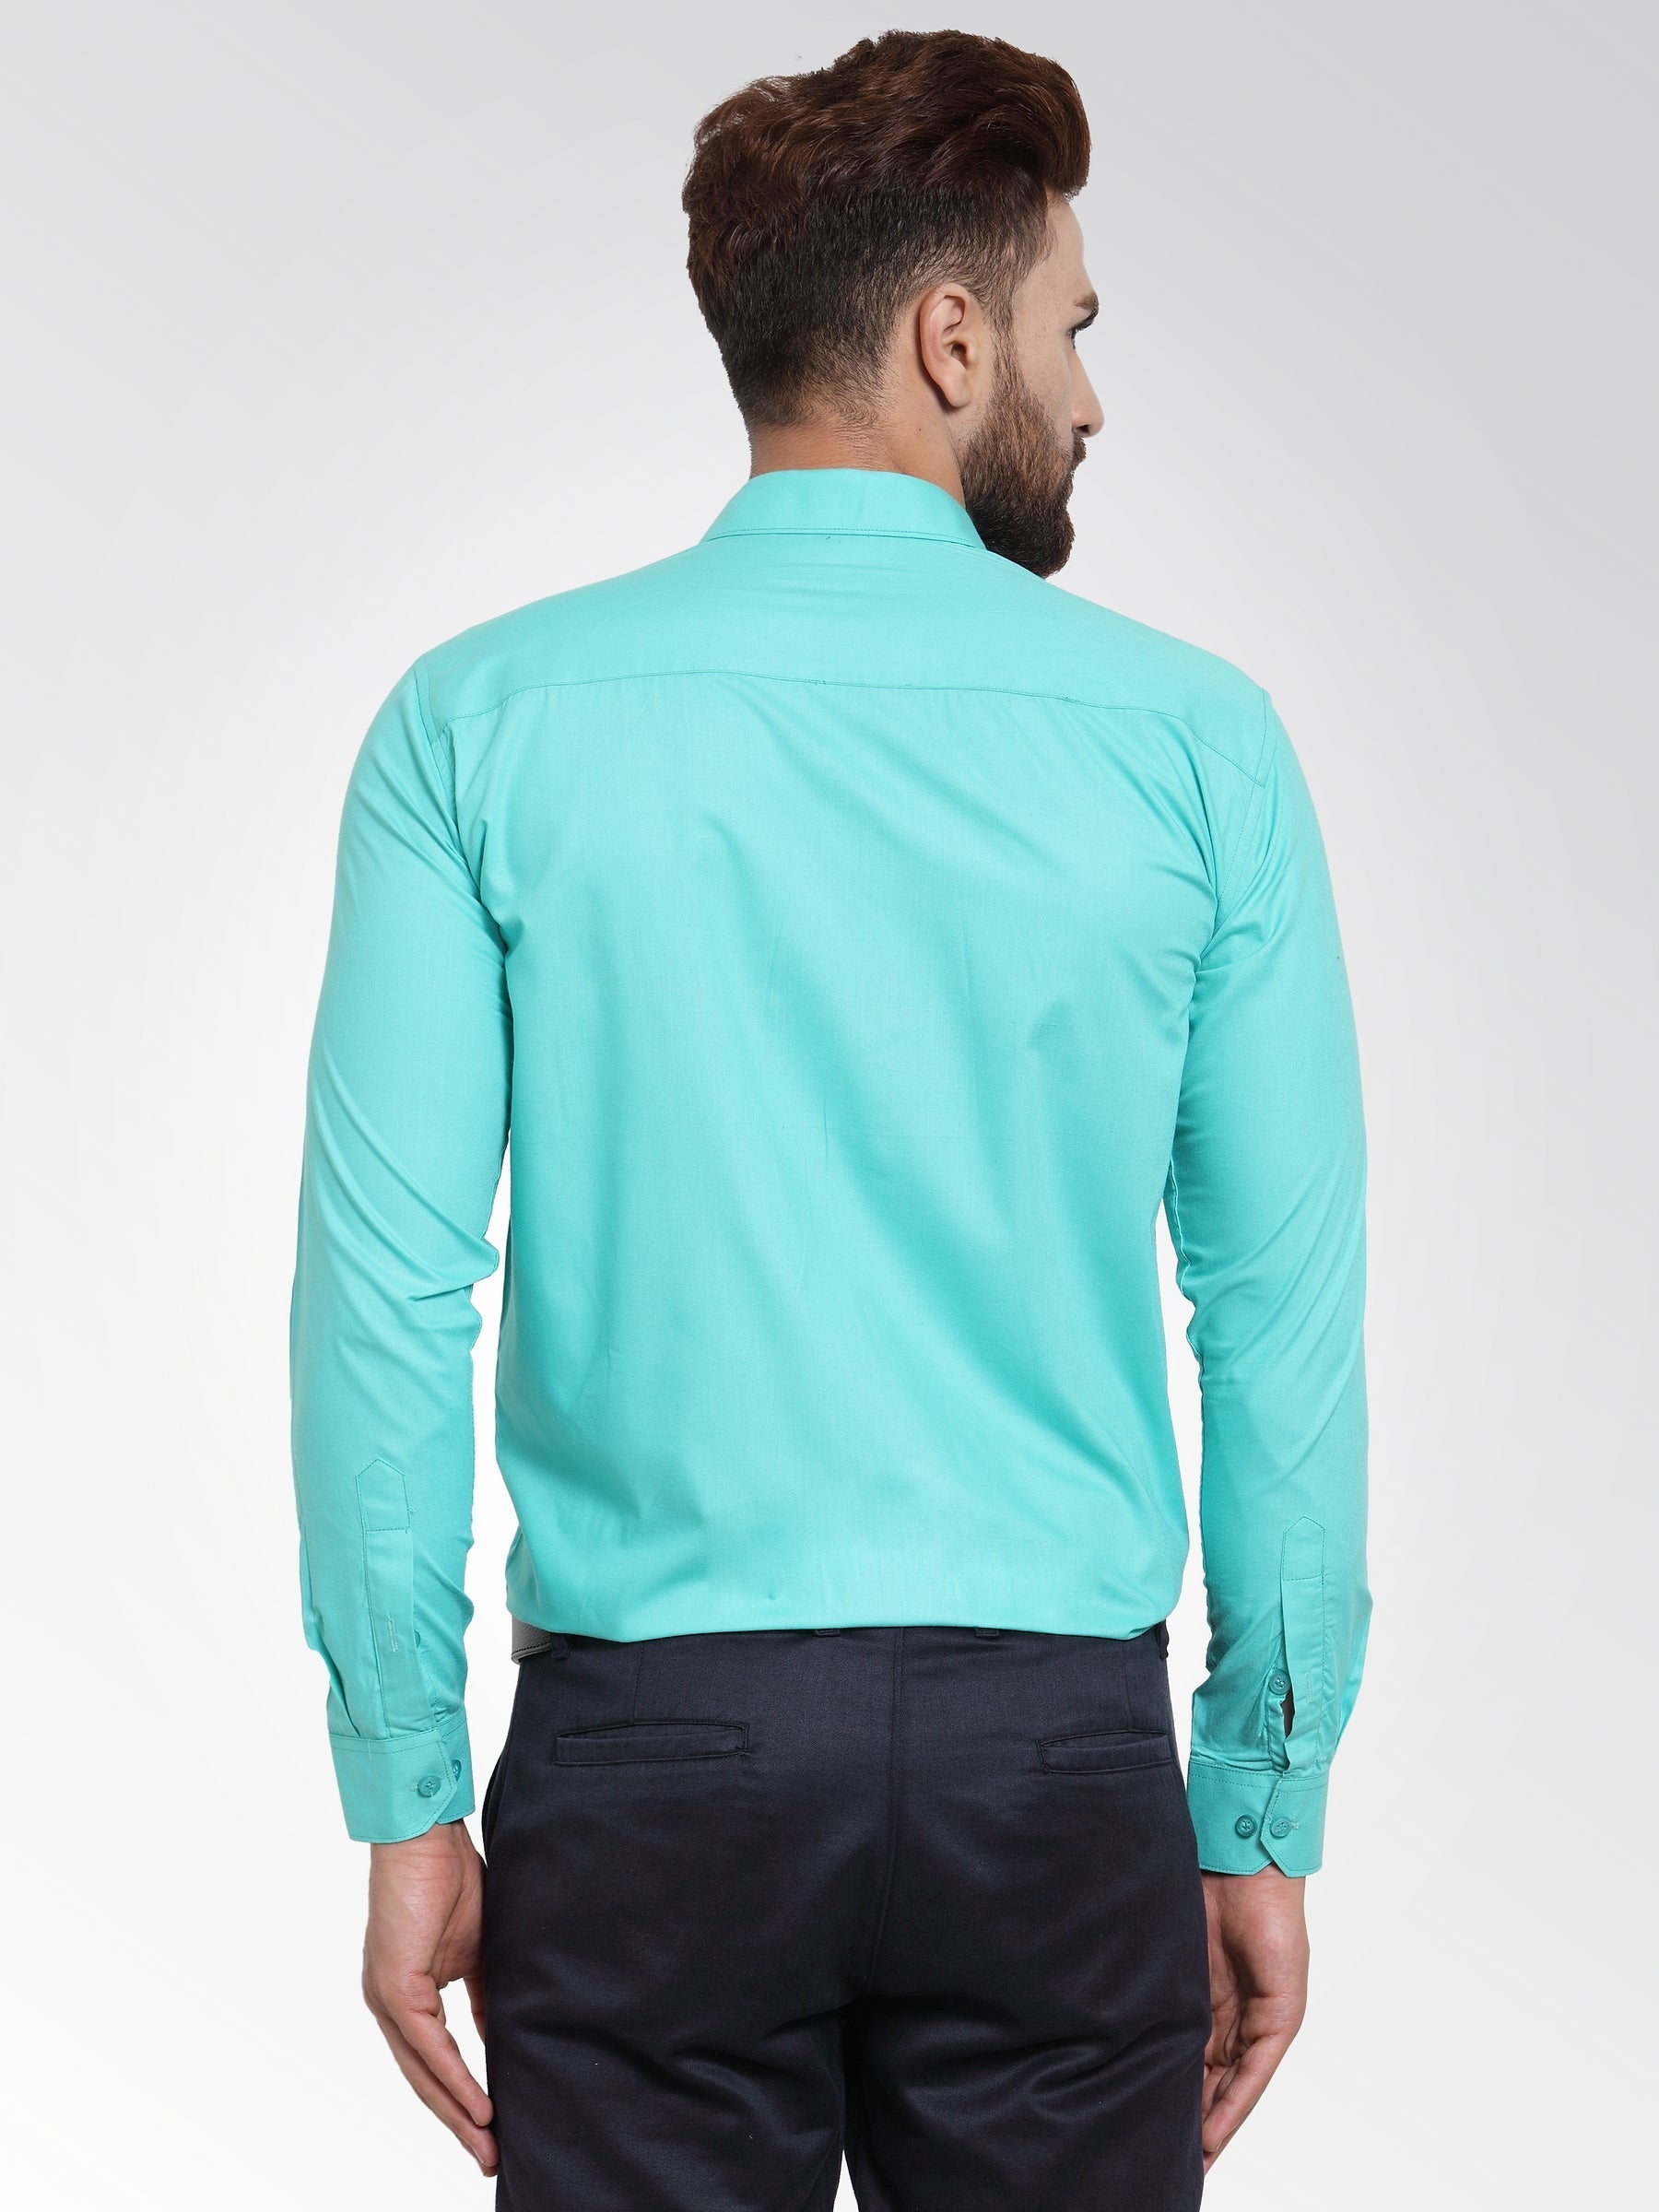 Men's Cotton Solid Aqua Blue Formal Shirt's ( SF 361Aqua ) - Jainish